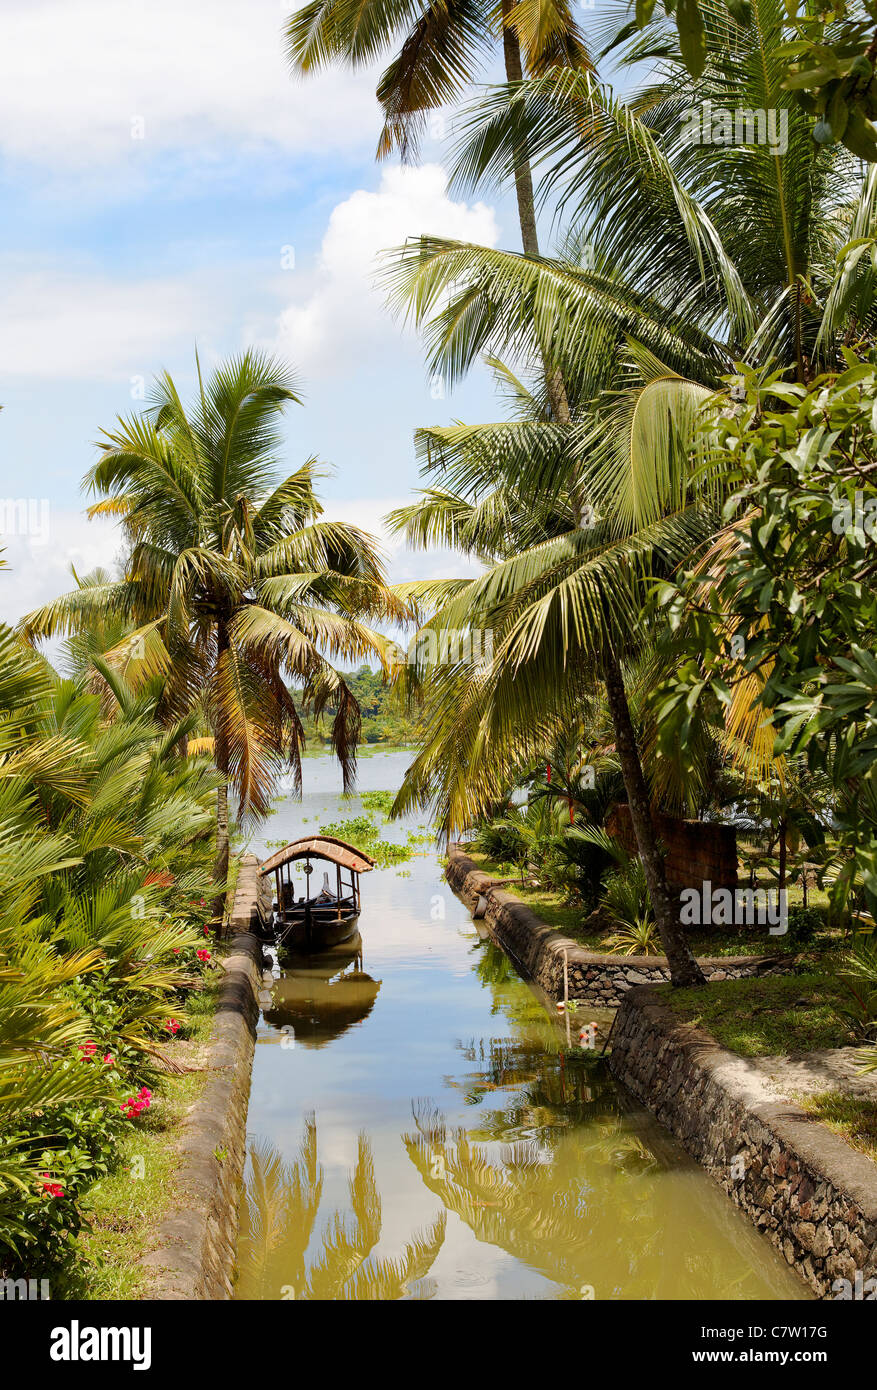 Escena del canal pequeño barco taxi remansos de Kerala India, cocoteros, hojas de palmera, la flora, el agua, el lago, el cielo azul, arteria relections Foto de stock